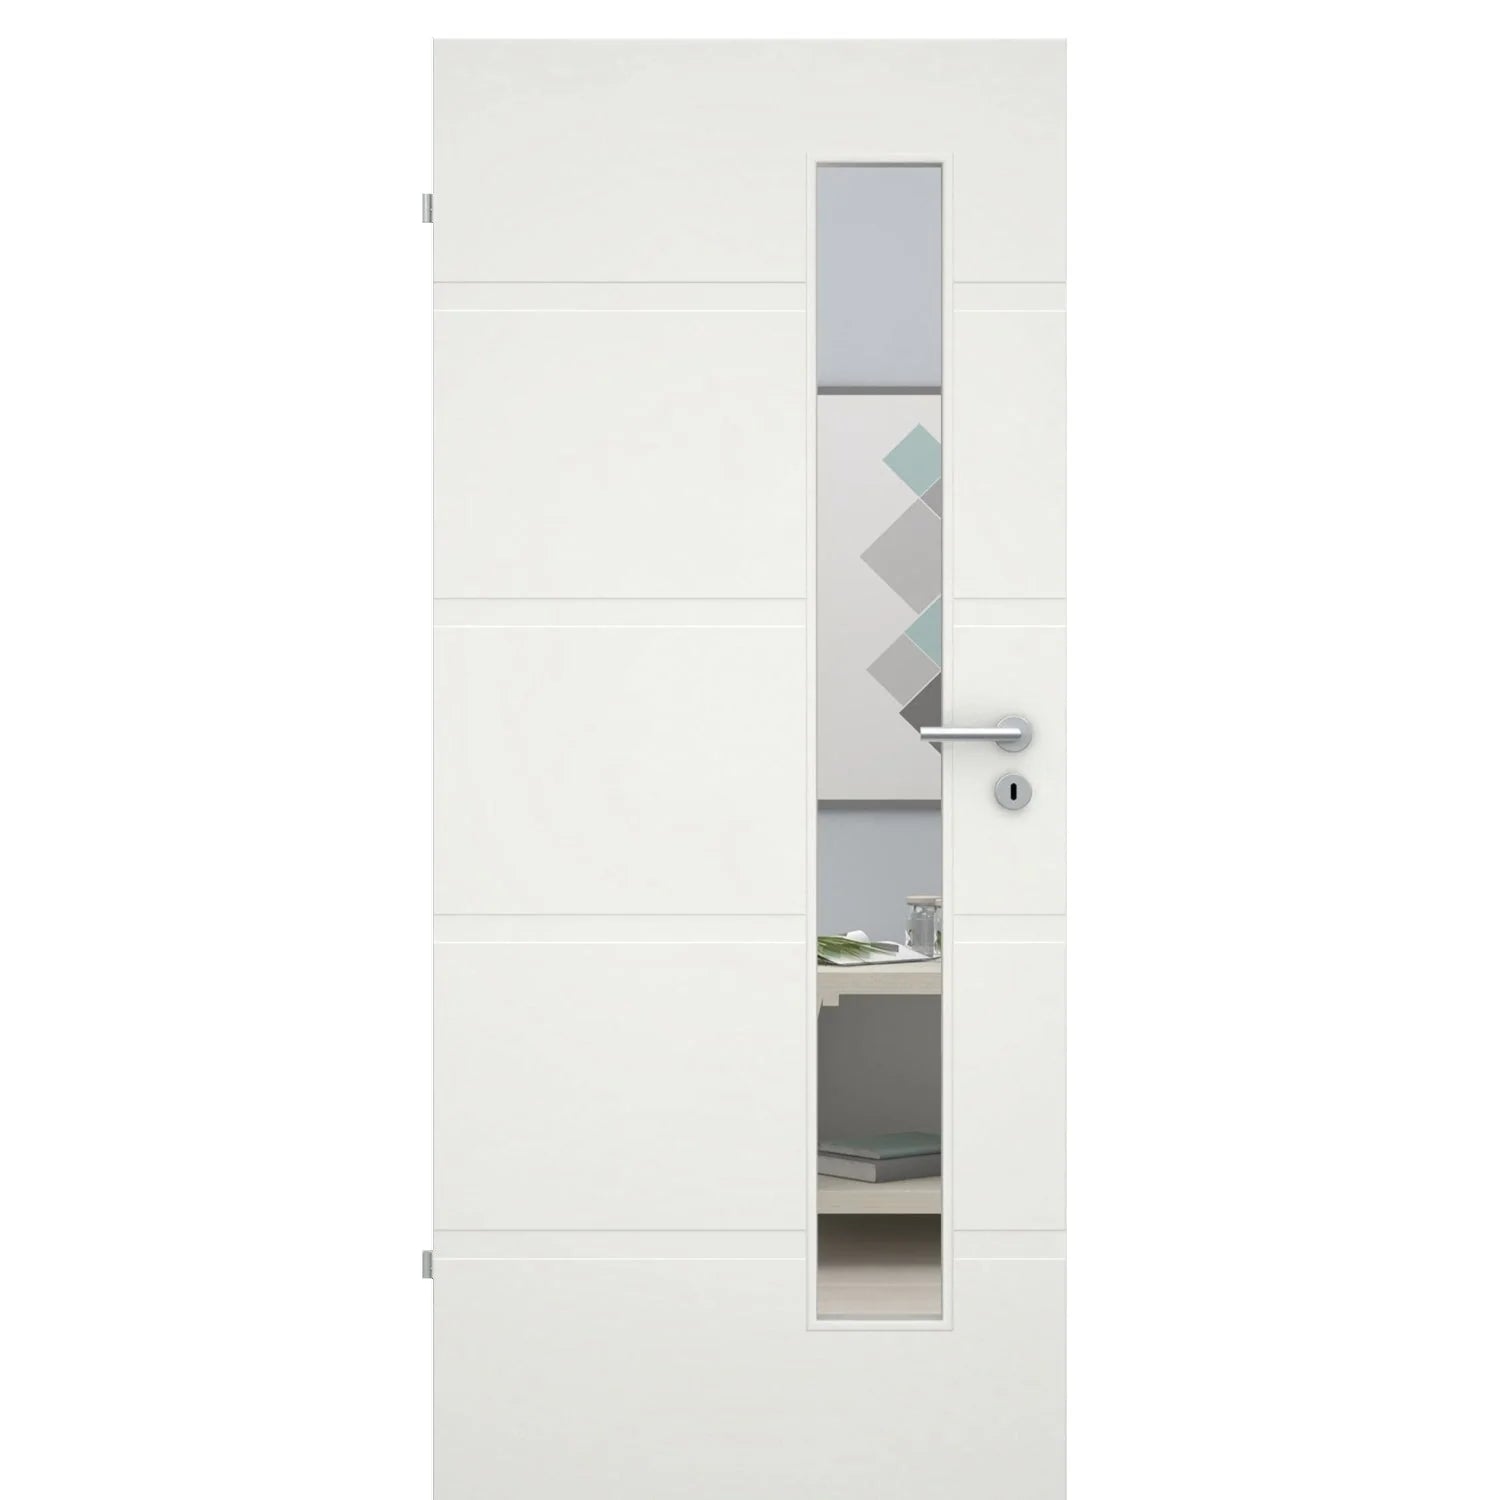 Zimmertür mit Lichtausschnittsoft-weiß 4 breite Rillen Eckkante - Modell Designtür QB41LAS